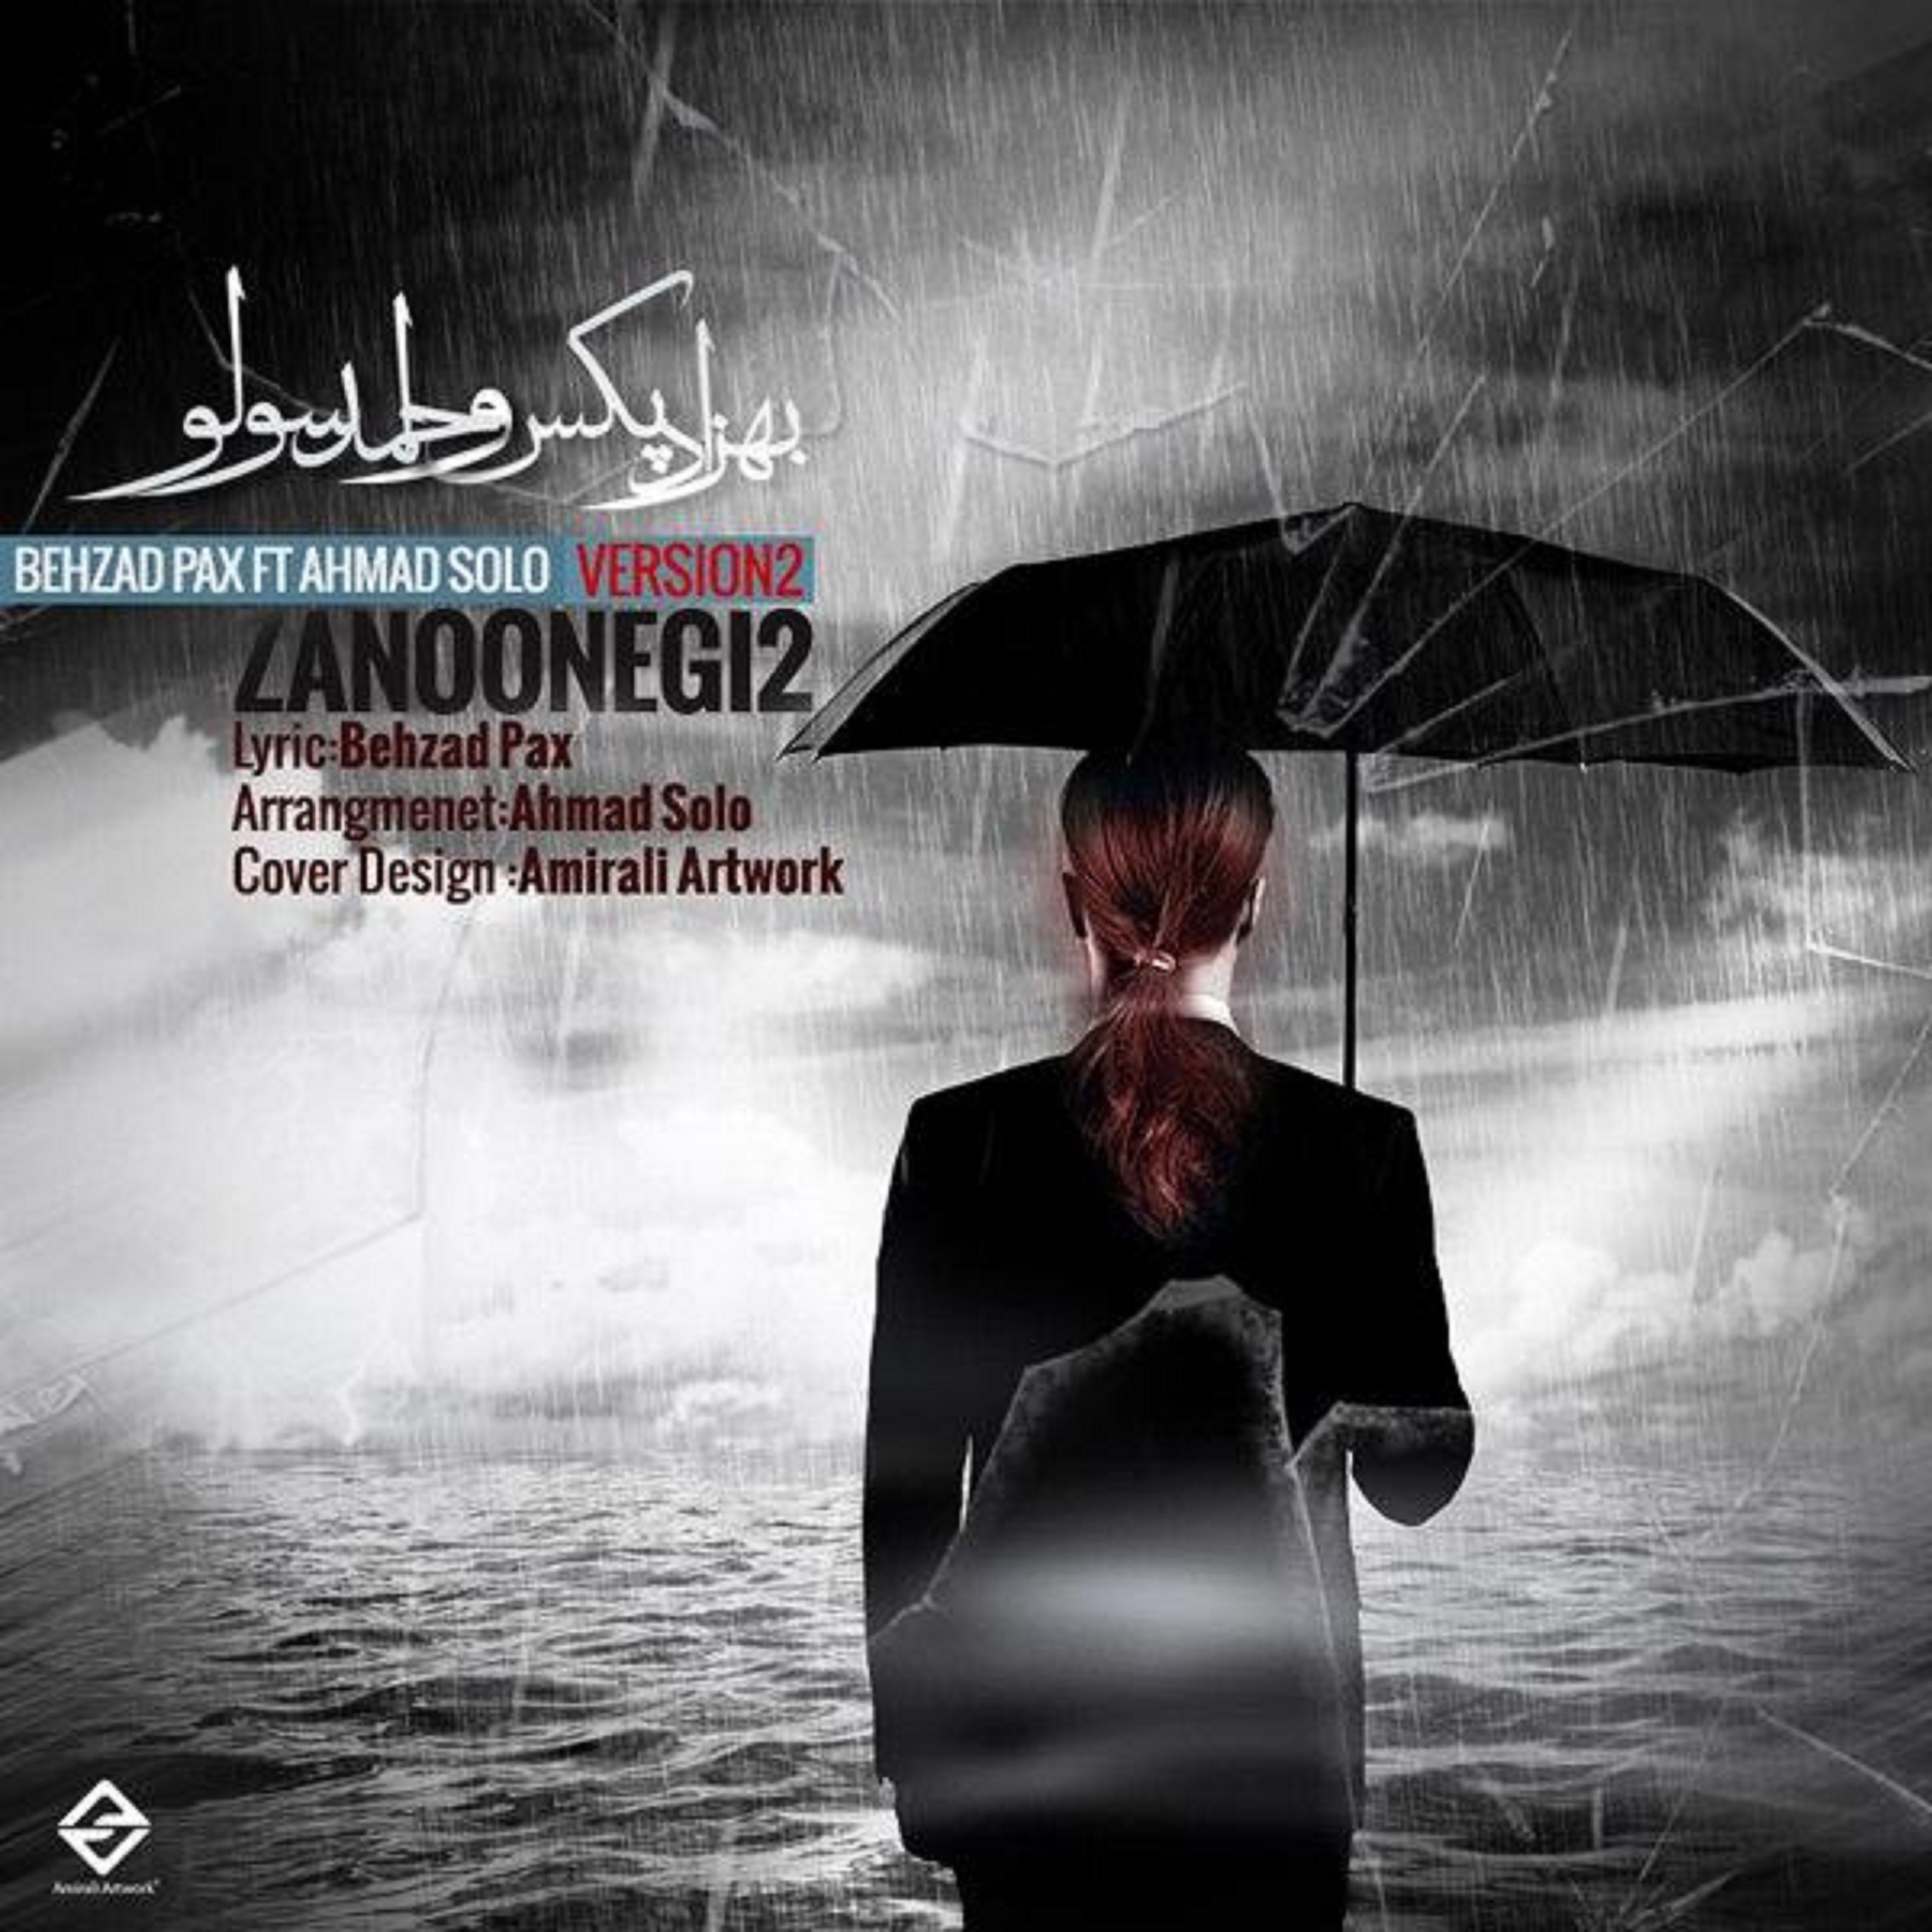  دانلود آهنگ جدید احمد سلو - زنونگی ۲ | Download New Music By Ahmad Solo - Zanoonegi 2 (feat. Behzad Pax)